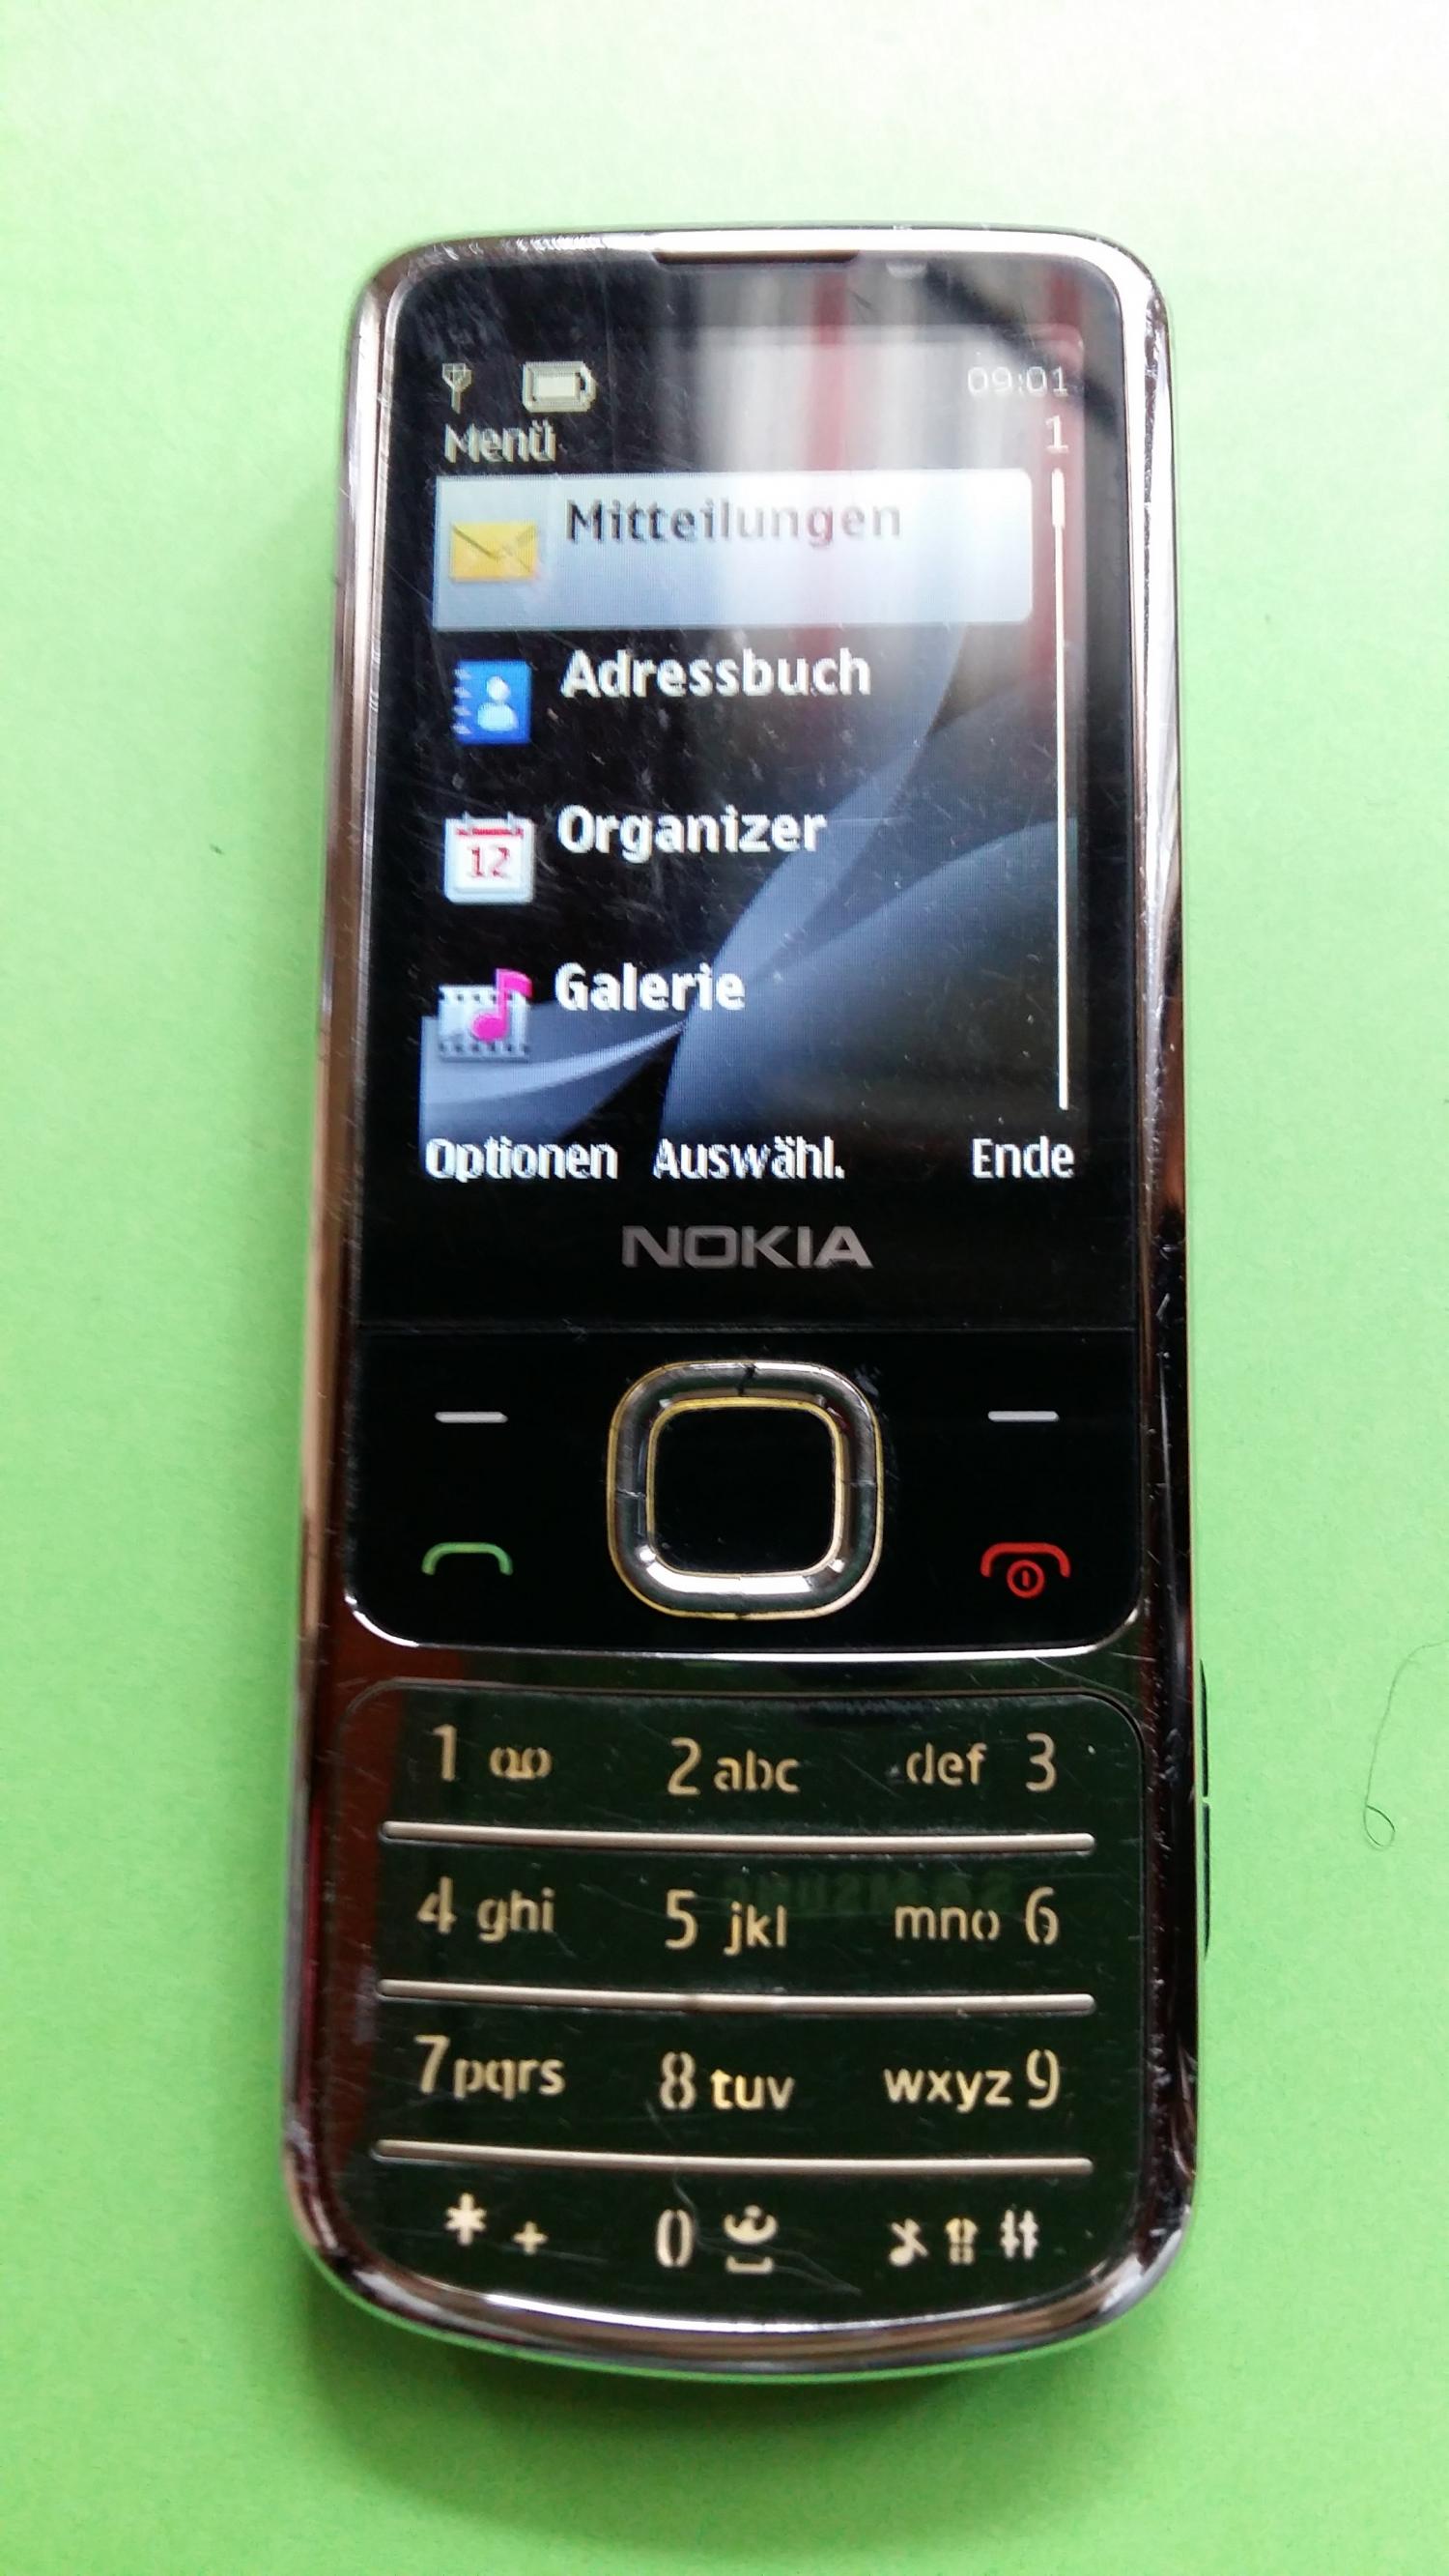 image-7337047-Nokia 6700C-1 (4)1.jpg